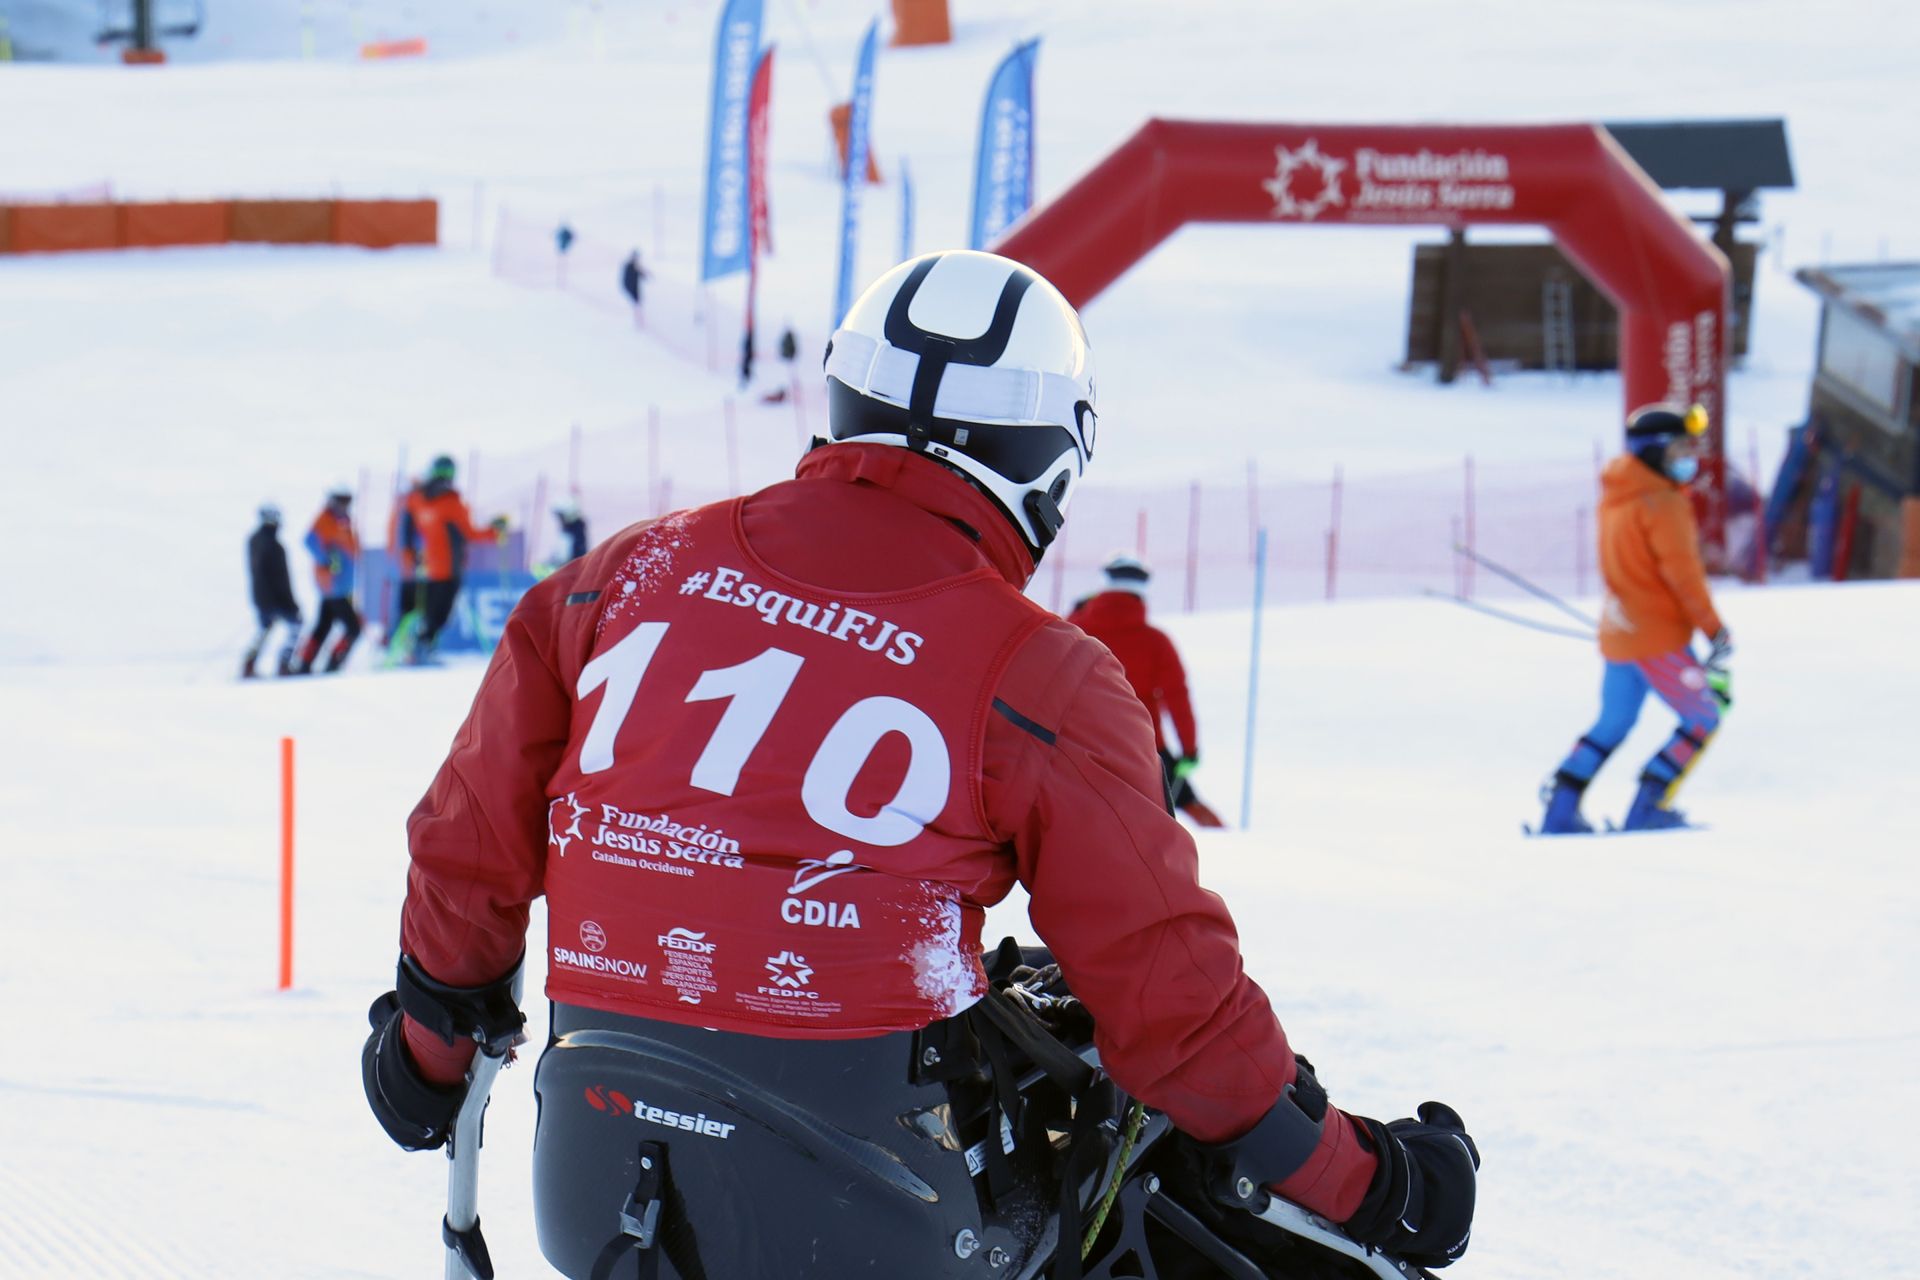 Balance positivo de la Copa de España Inclusiva de esquí alpino Fundación Jesús Serra 2023